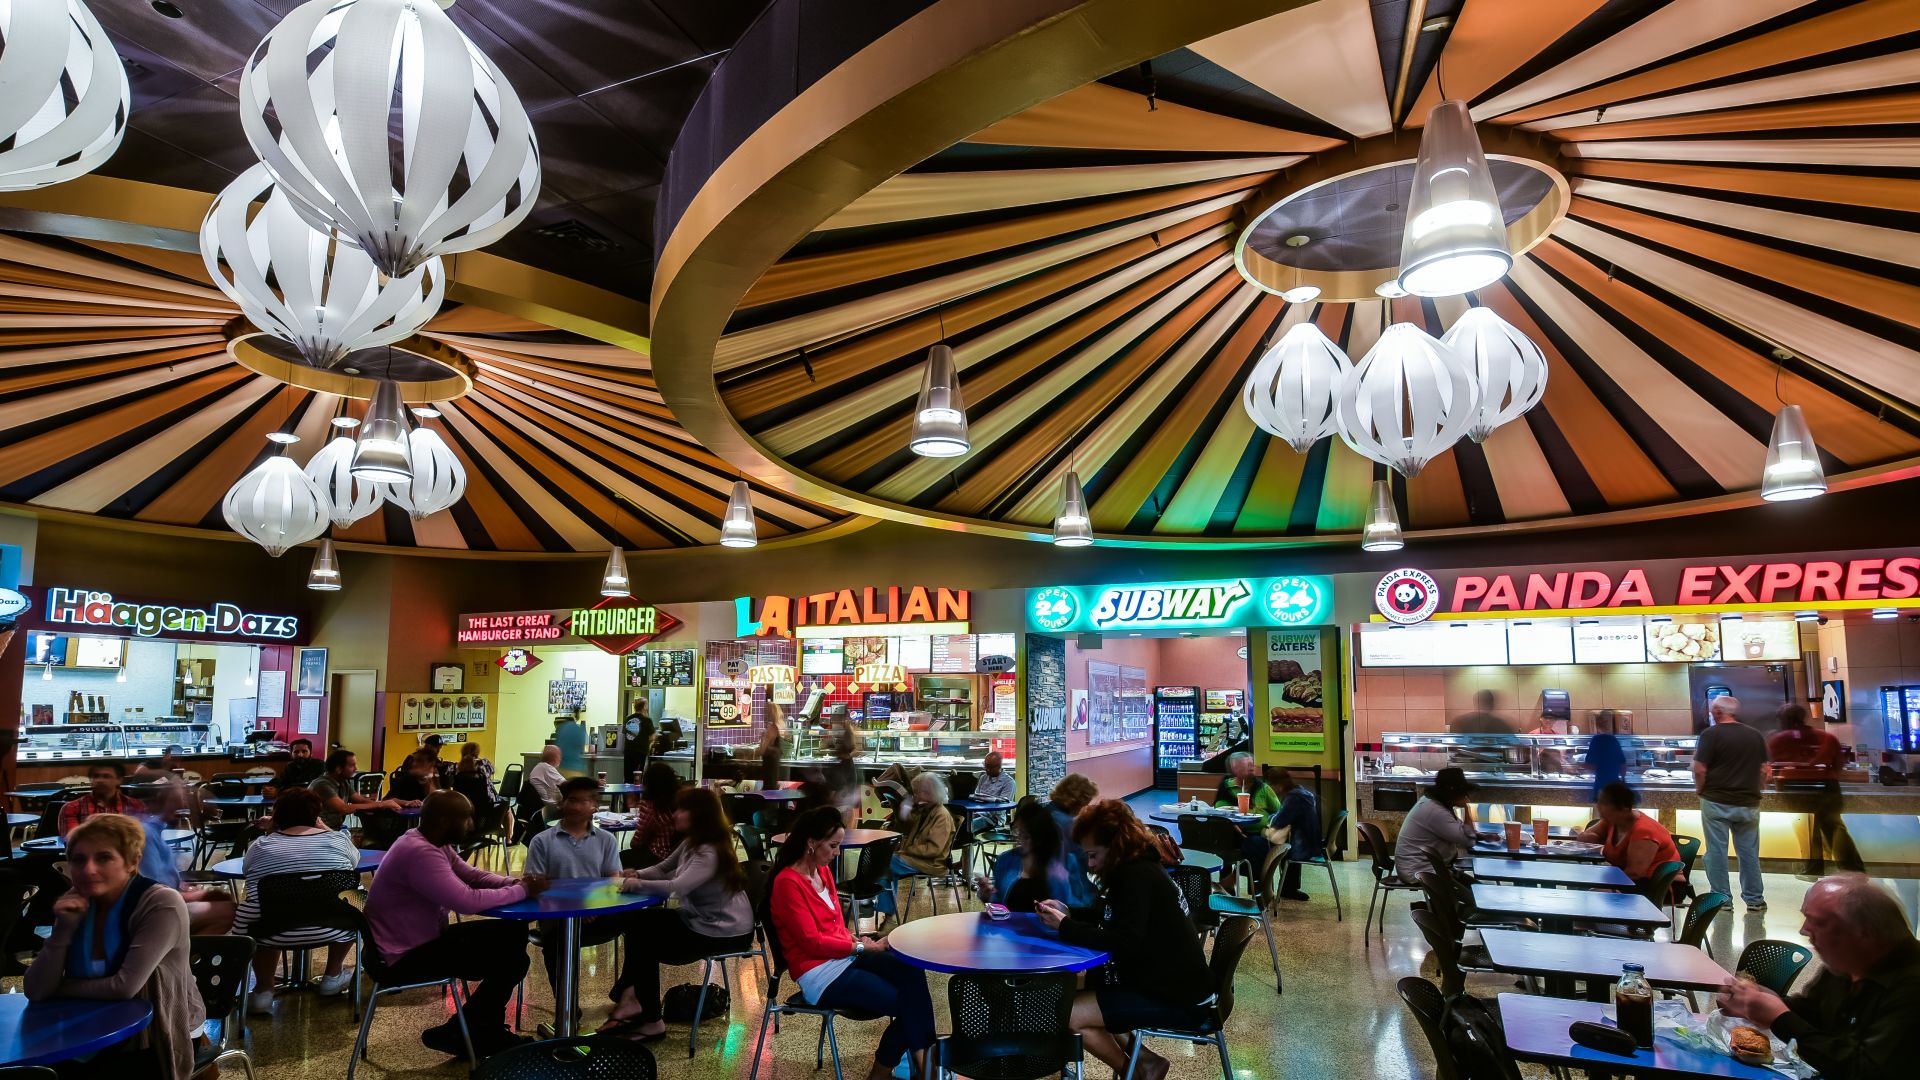 Indoor food court in the casino